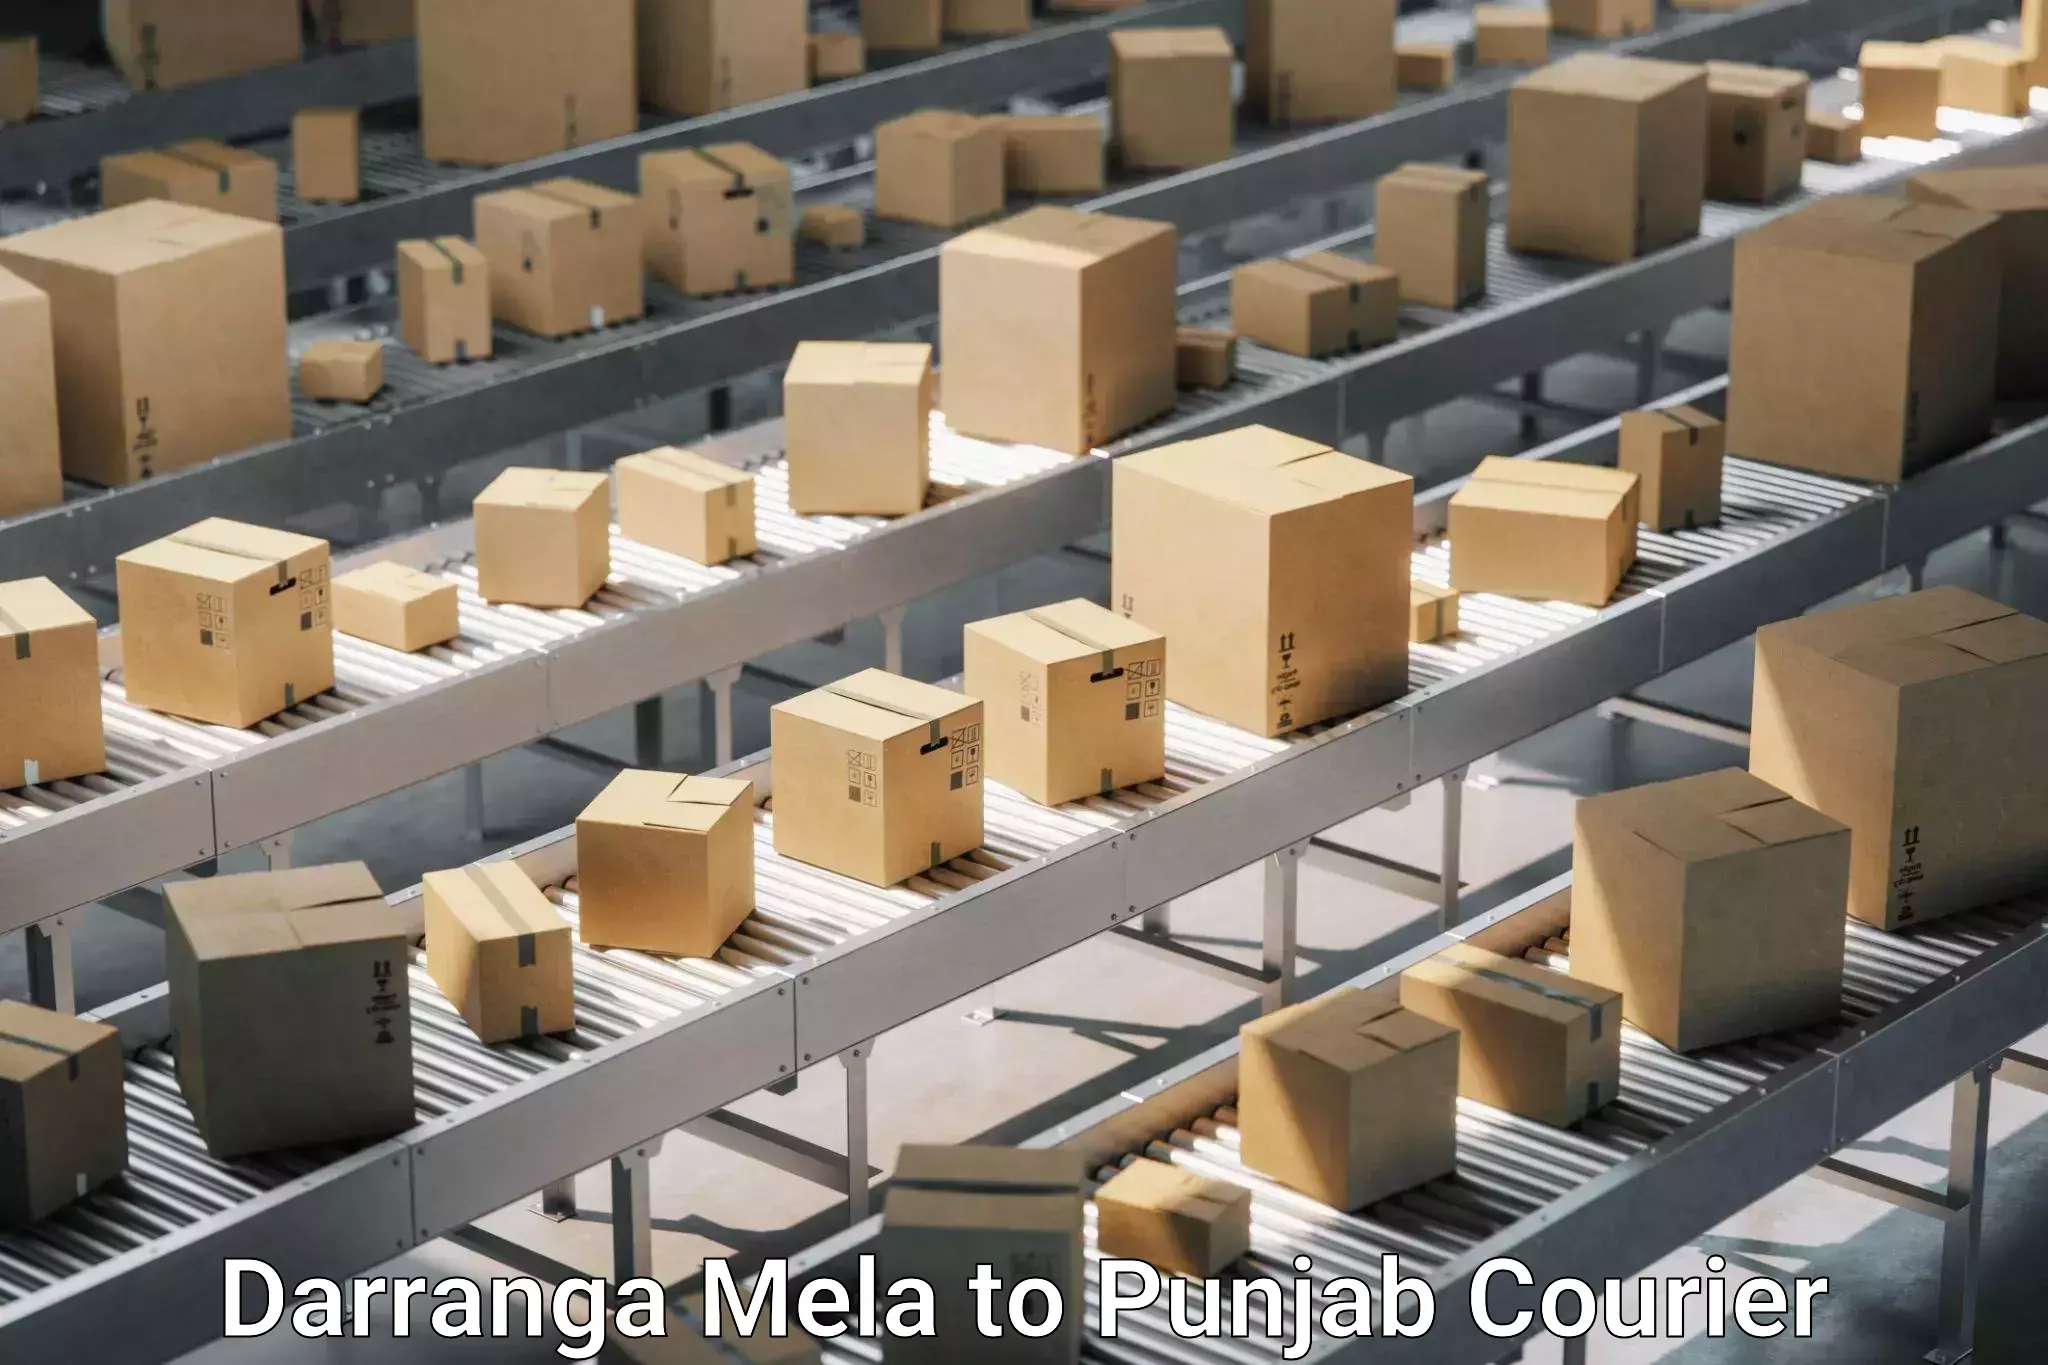 Furniture transport and storage in Darranga Mela to Patran